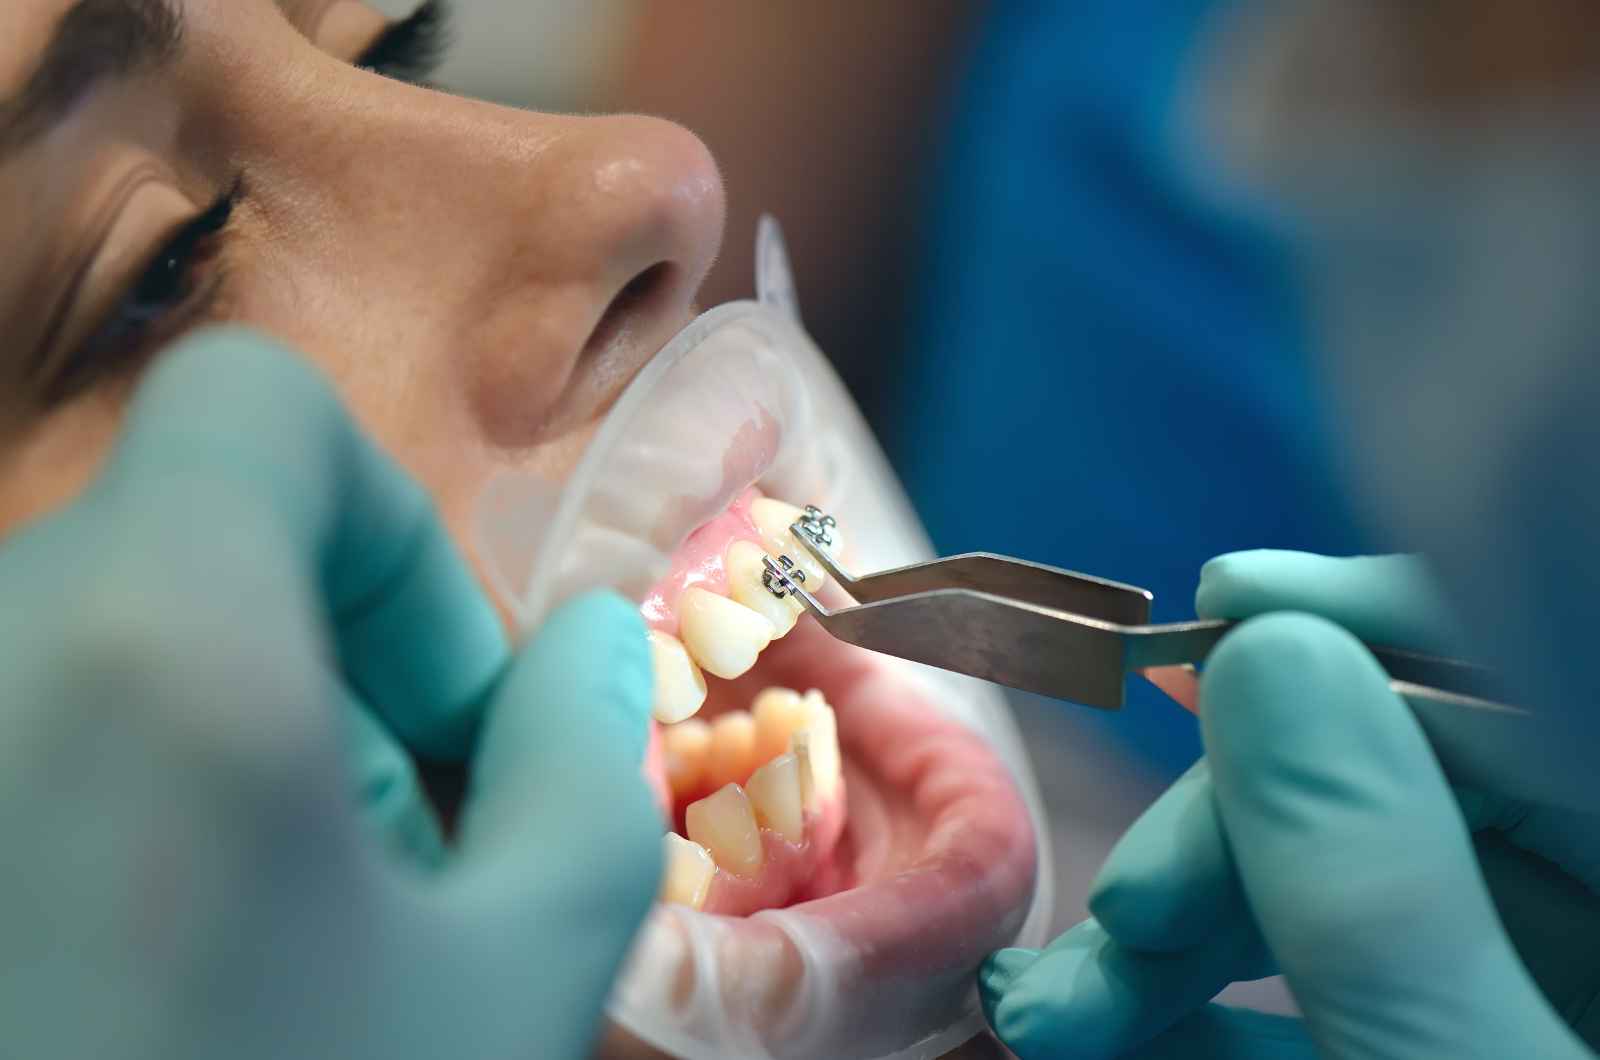 תפקידן של מרפאות שיניים מומחים בשיפור בריאות הפה: התמקדות בקליניקידס בתל אביב